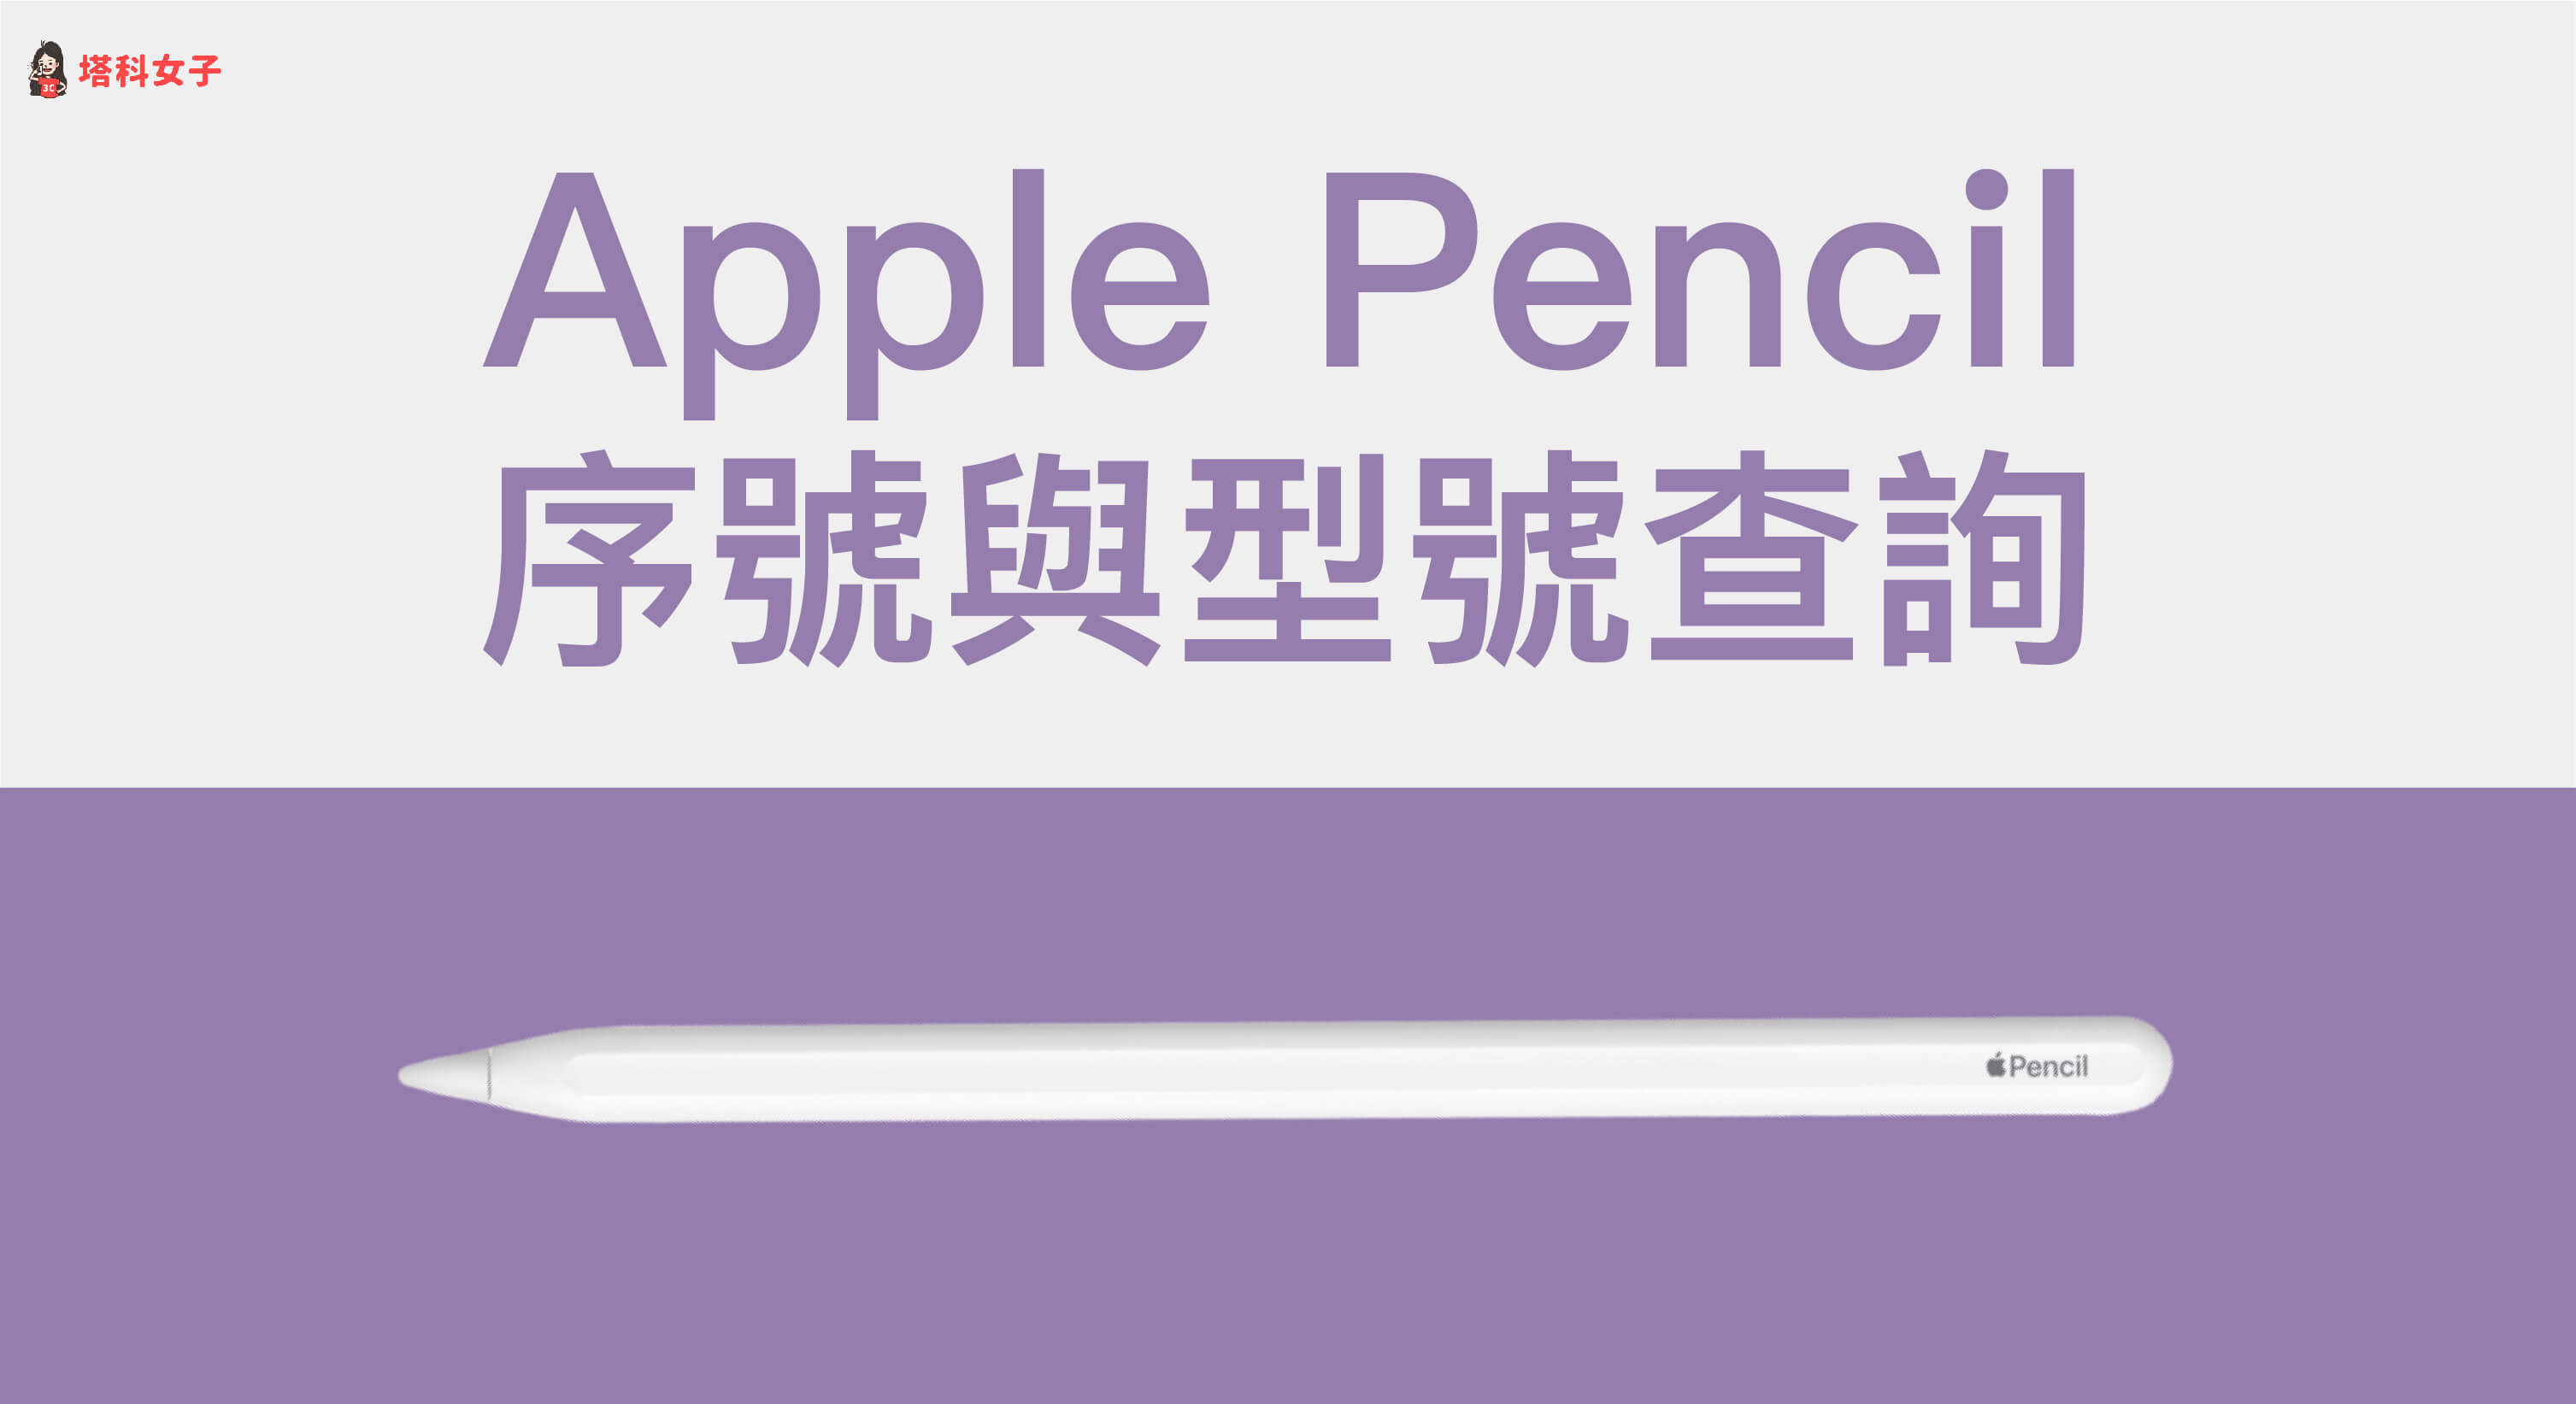 Apple Pencil 序號怎麼查詢？教你一鍵查看 Apple Pencil 序號與型號